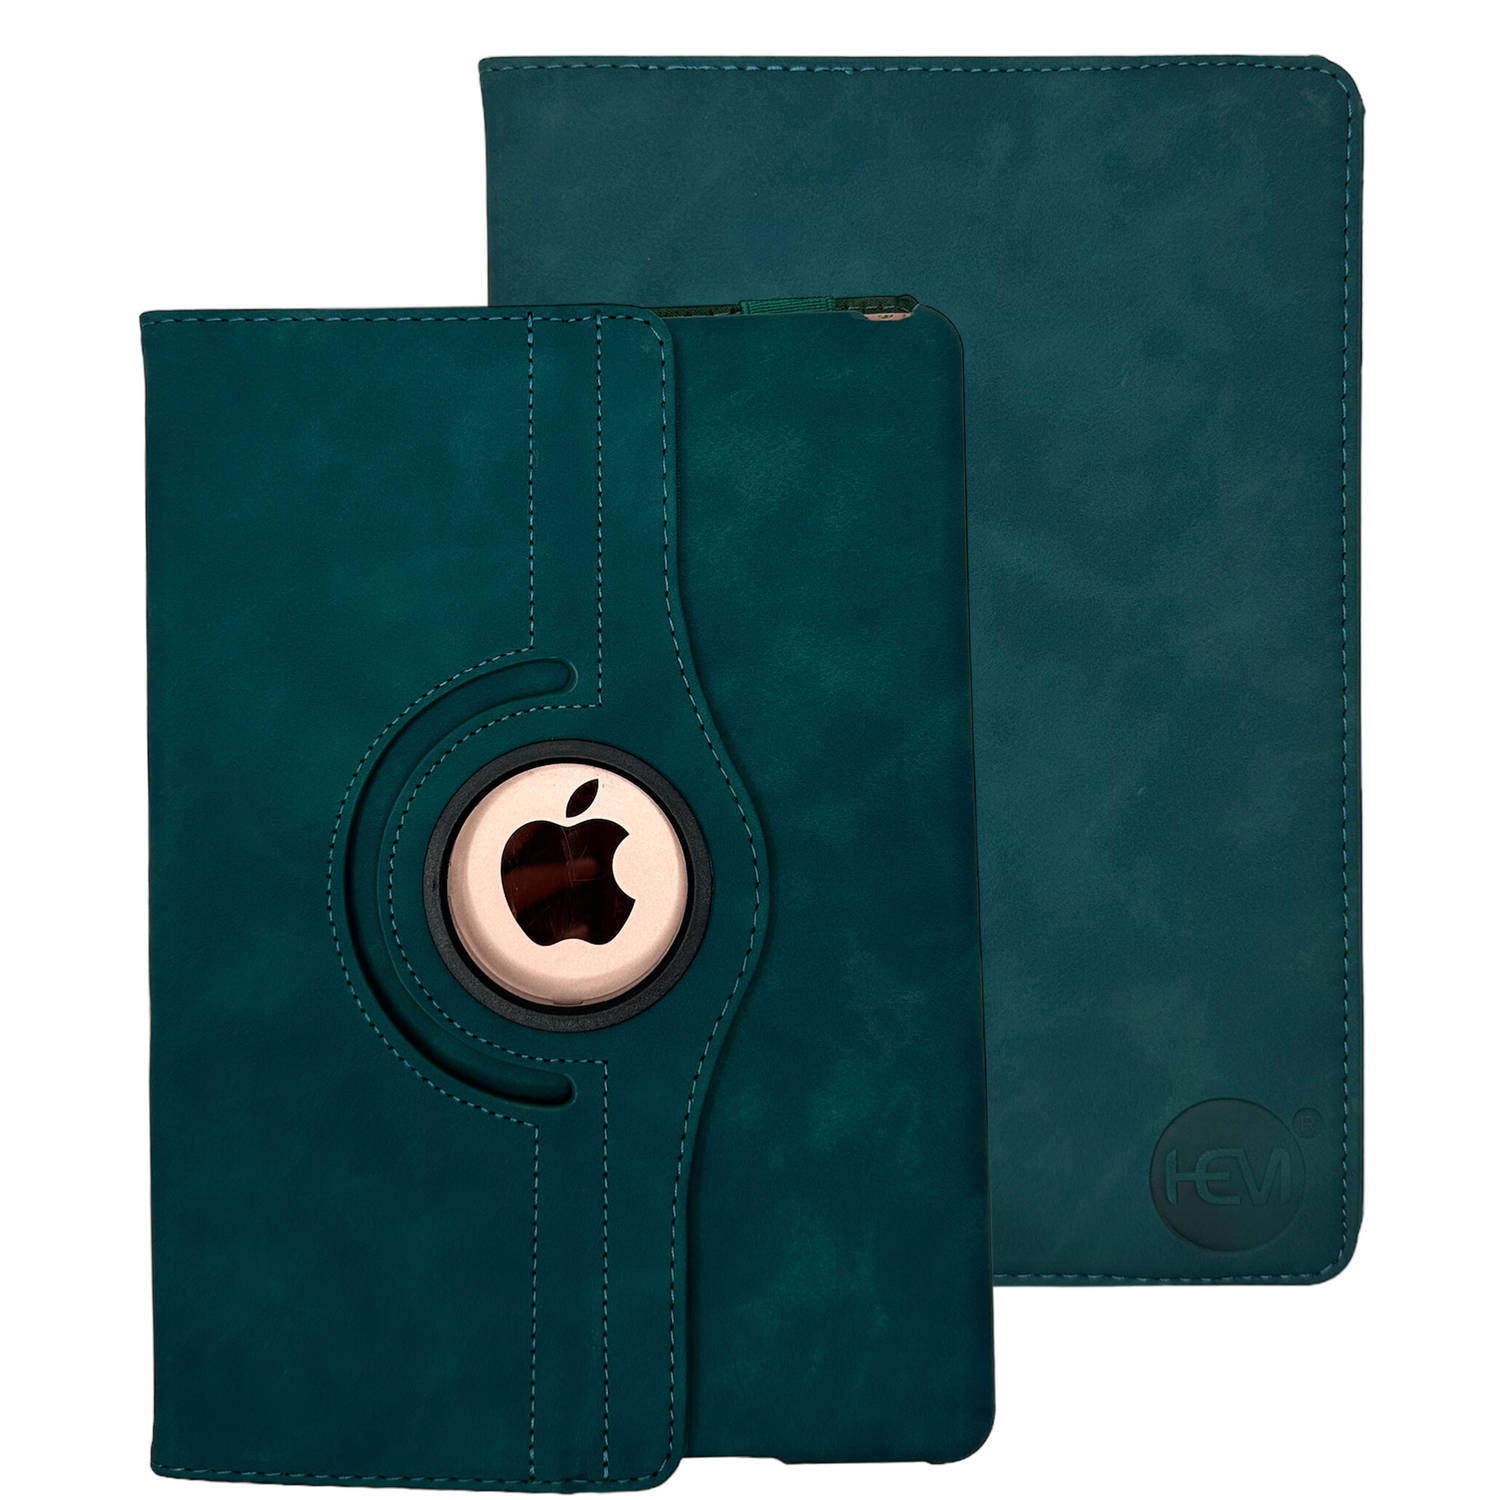 HEM Silky Green iPad hoes geschikt voor iPad Pro 12.9 (2015-2017) 12.9 inch Draaibare Cover Met Styl